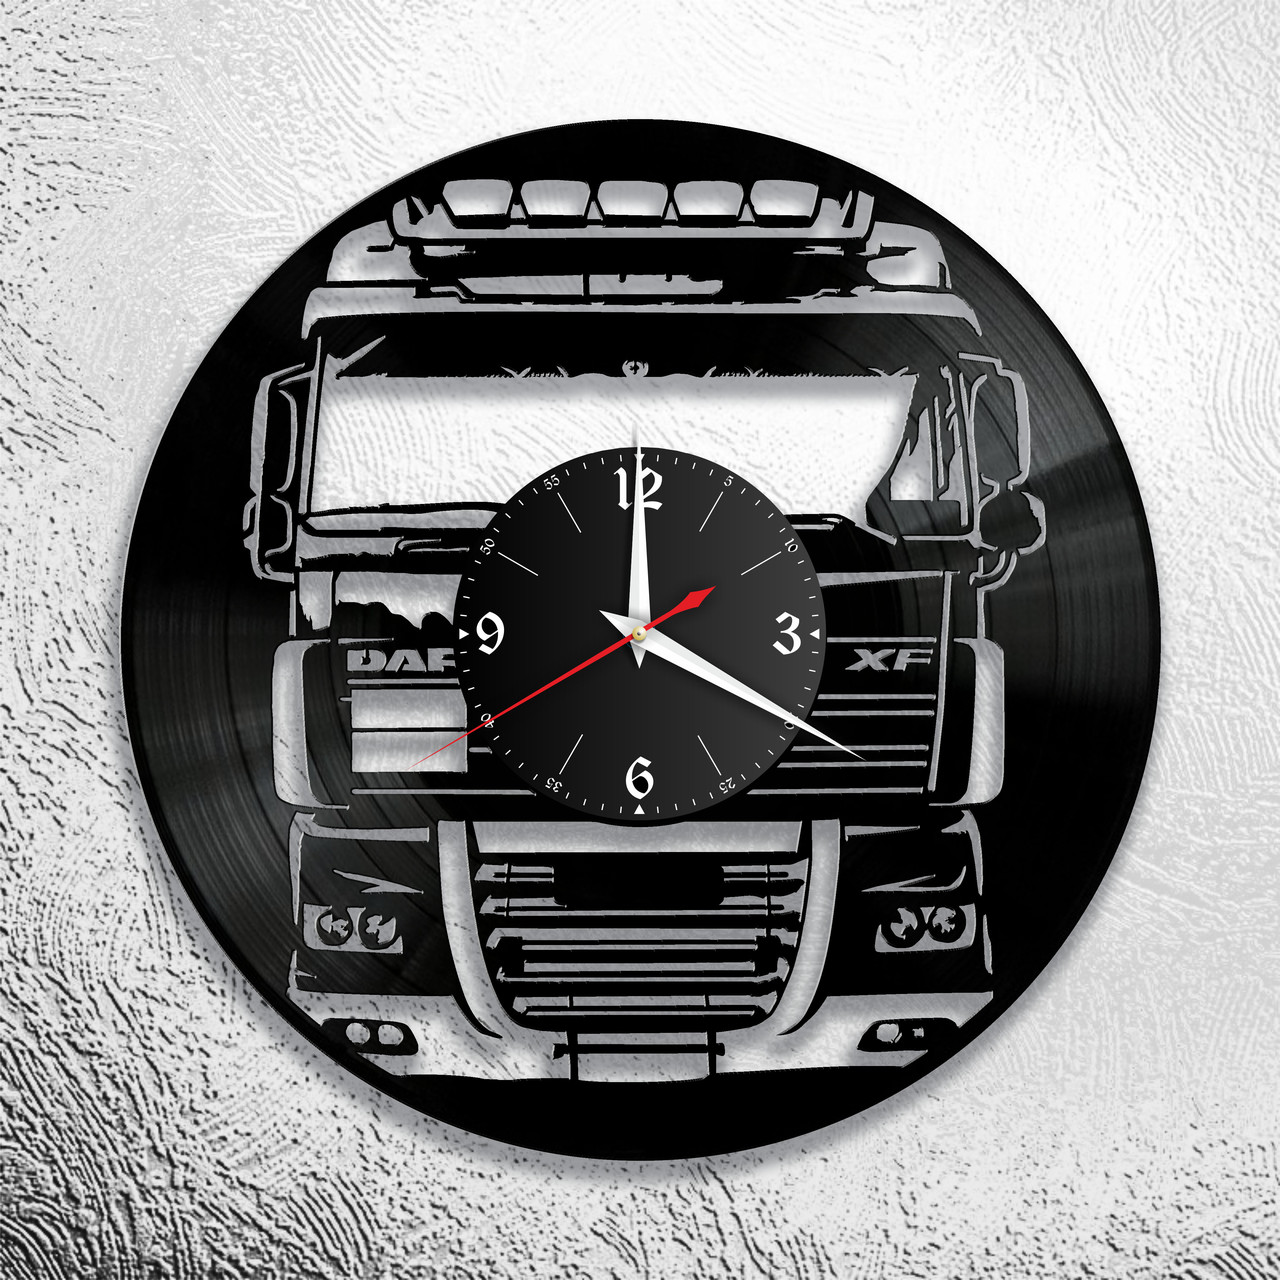 Часы из виниловой пластинки  "DAF" версия 3, фото 1